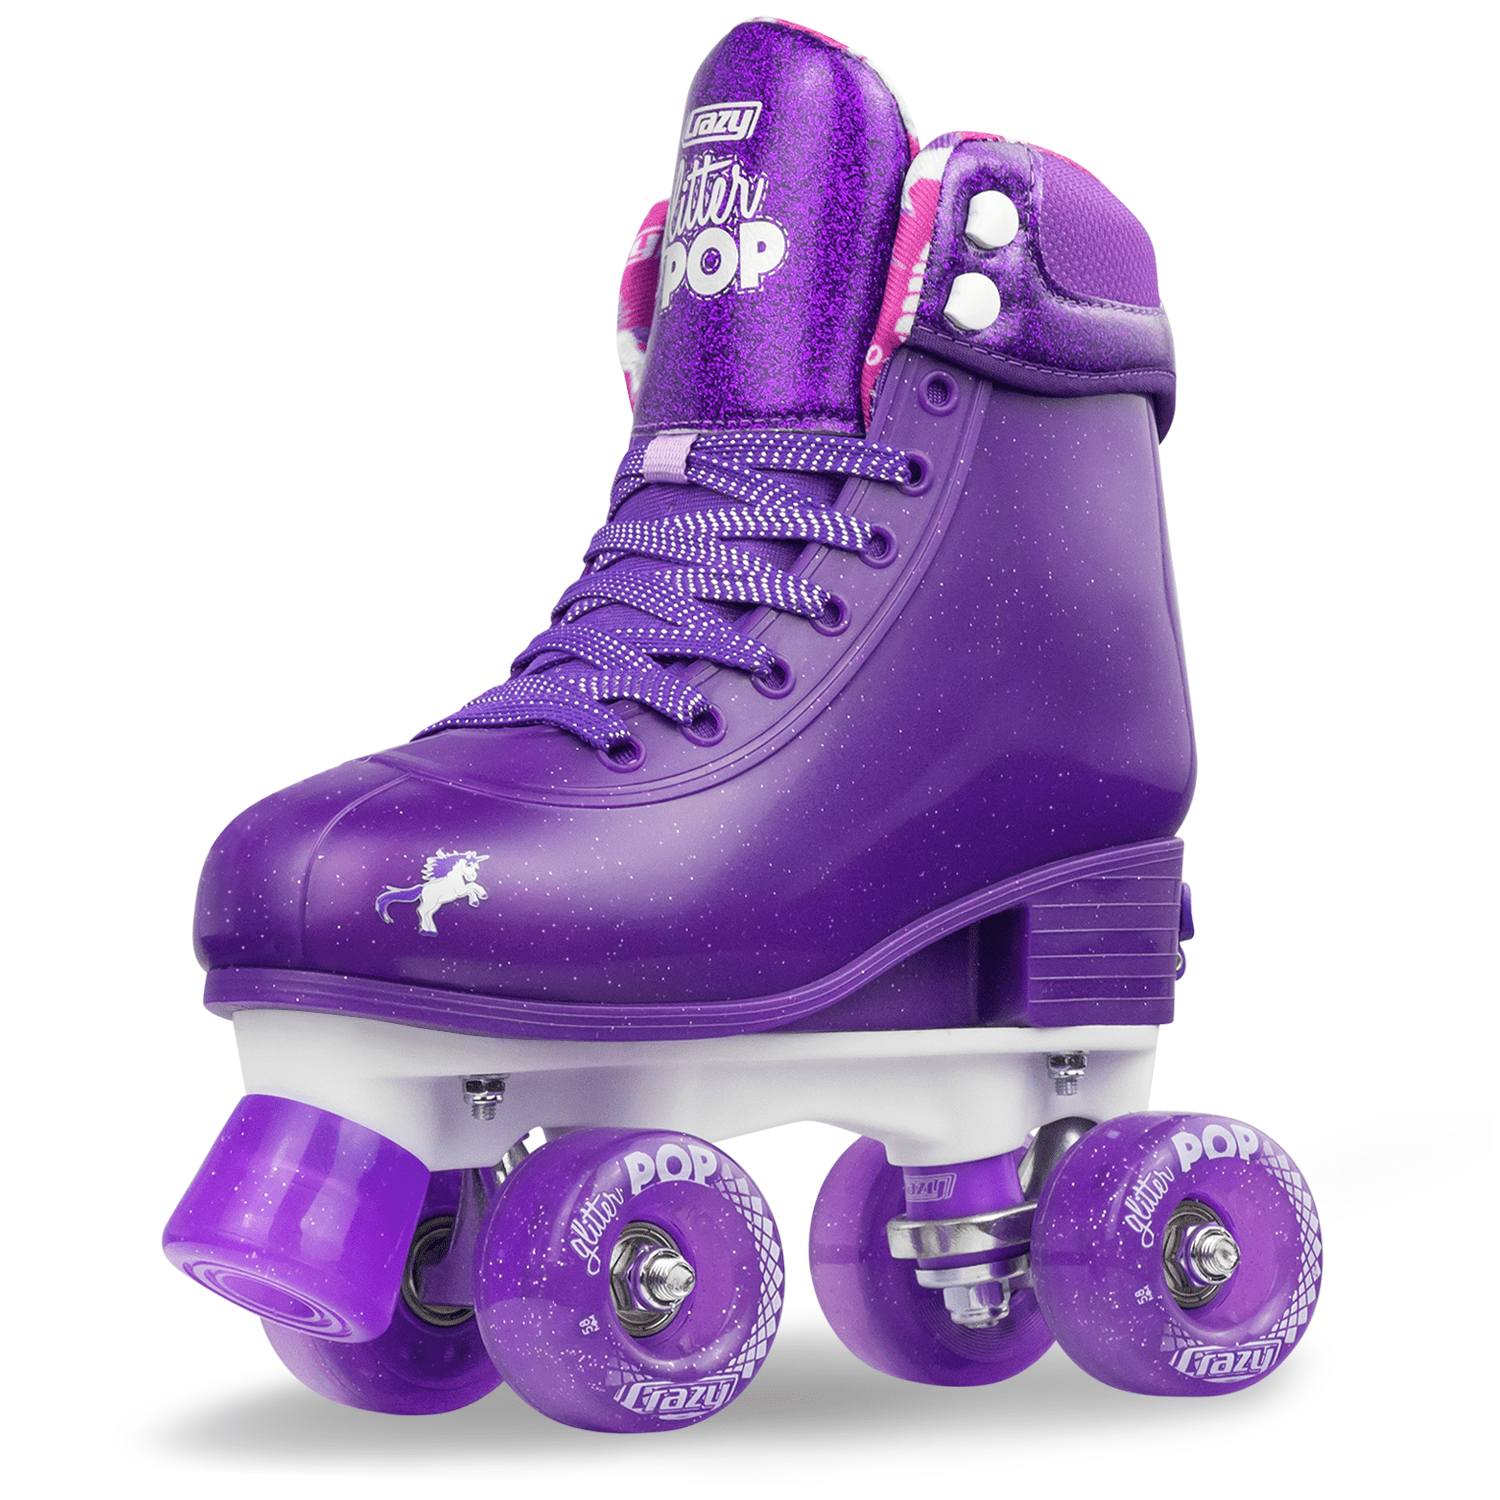 Vestlig Skæbne slot Crazy Skates Adjustable Roller Skates for Girls and Boys - Glitter Pop  Collection - Size Adjustable to fit four sizes - Walmart.com